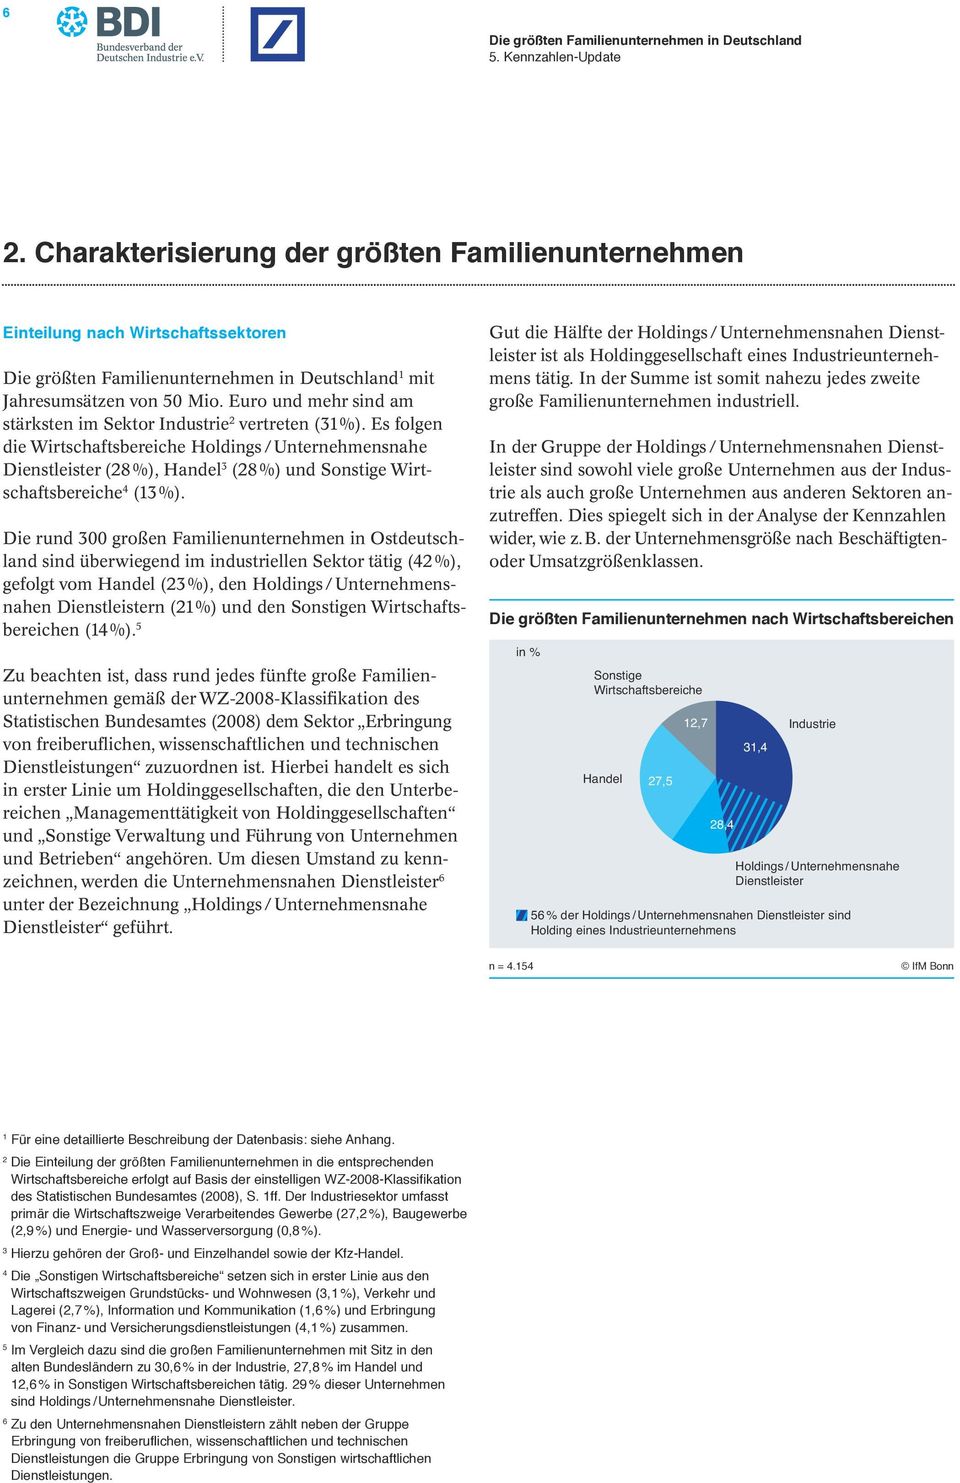 Die rund 300 großen Familienunternehmen in Ostdeutschland sind überwiegend im industriellen Sektor tätig (42 %), gefolgt vom Handel (23 %), den Holdings / Unternehmensnahen Dienstleistern (2 %) und